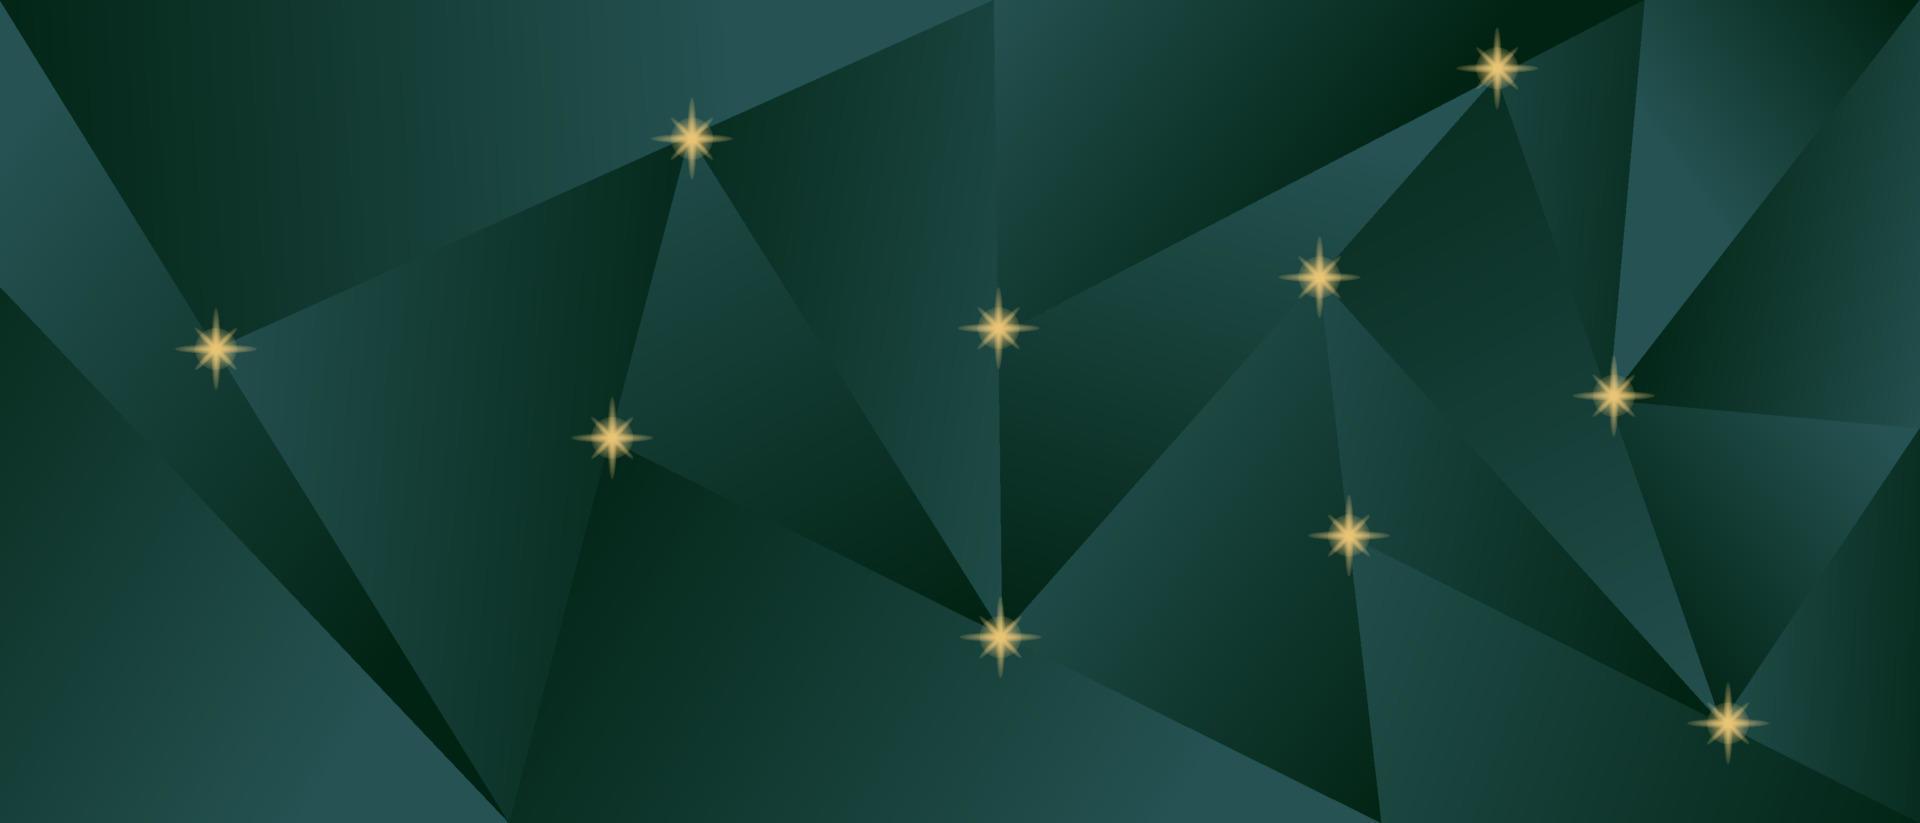 fondo 3d abstracto con patrón poligonal, pequeñas estrellas doradas. tarjeta de invitación geométrica moderna. vector